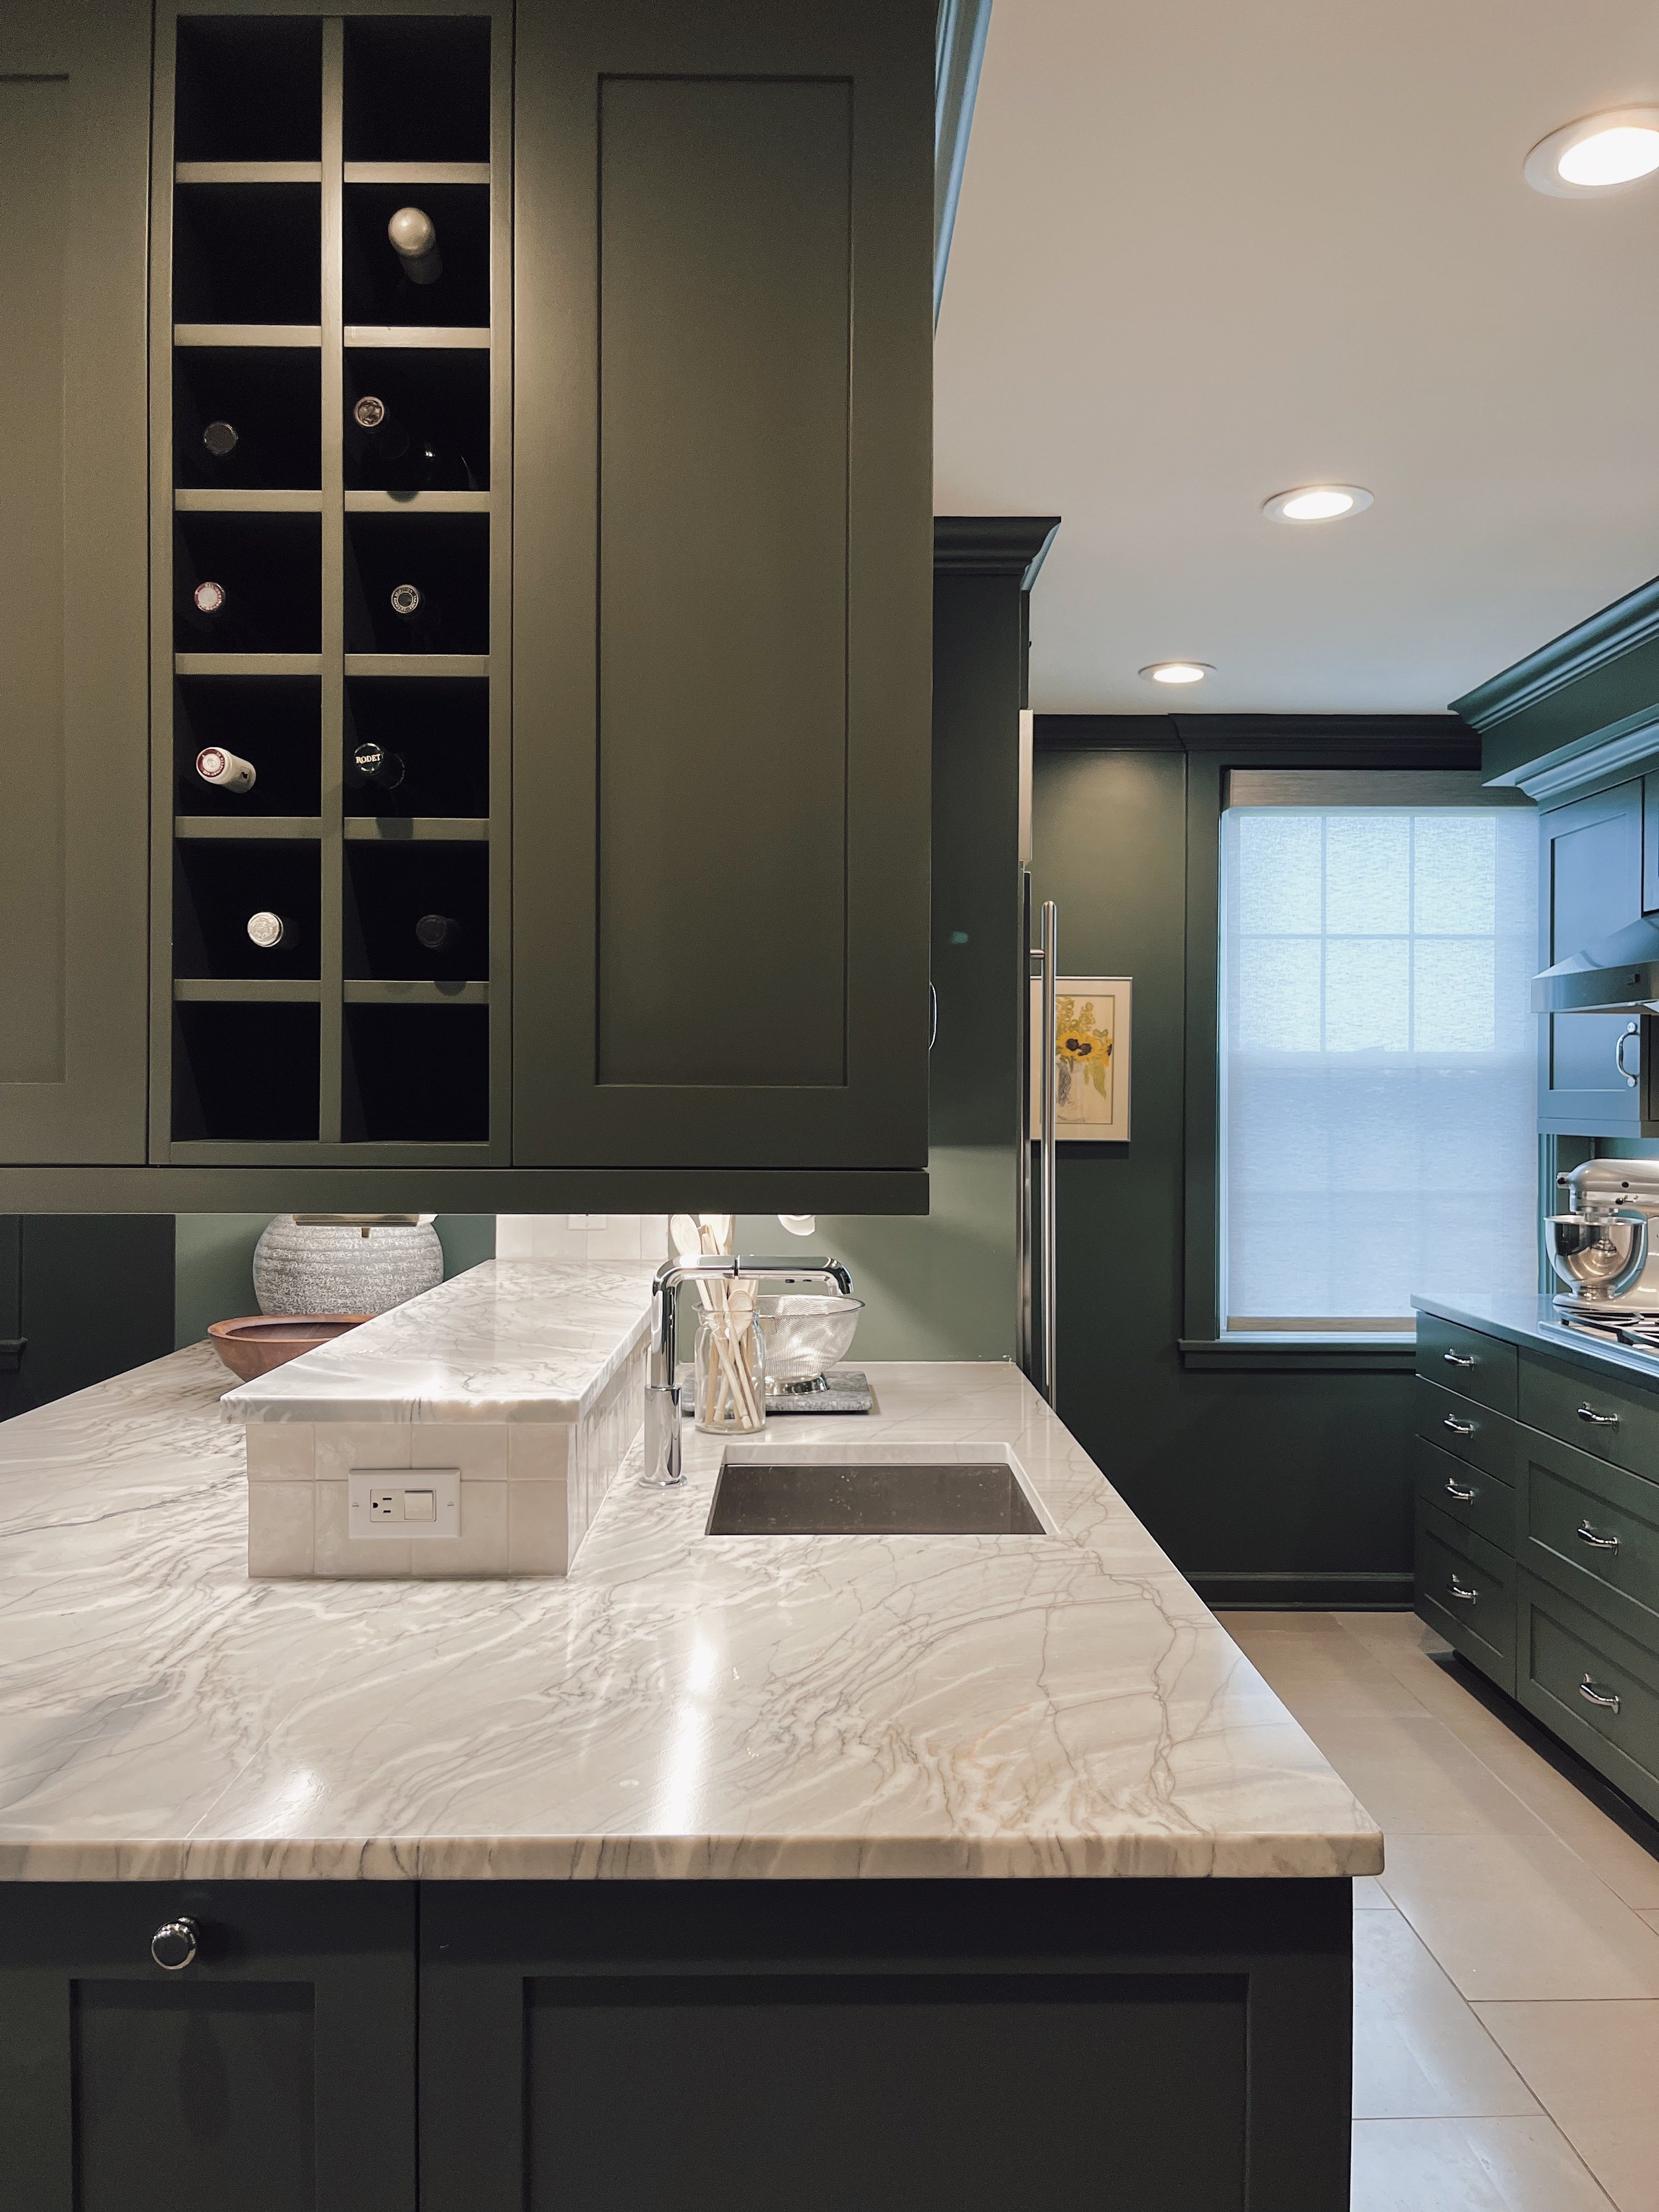  kitchen, kitchen cabinets, green kitchen, neutral backsplash, quartzite countertops, stone floor, moody kitchen, elegant, dramatic  